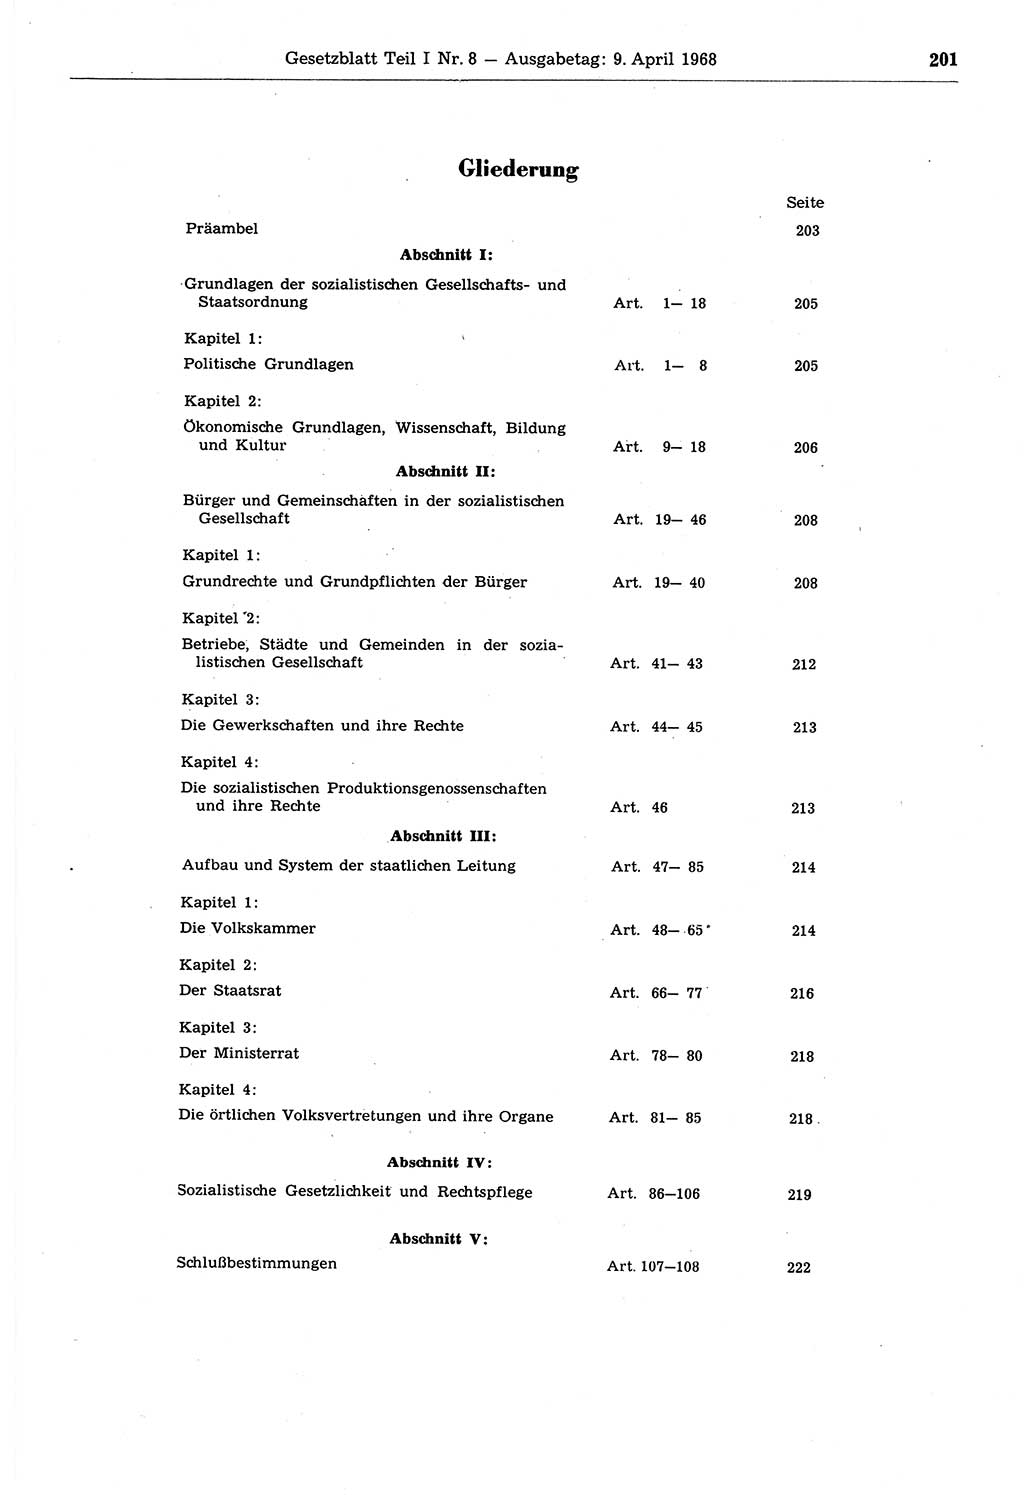 Gesetzblatt (GBl.) der Deutschen Demokratischen Republik (DDR) Teil Ⅰ 1968, Seite 201 (GBl. DDR Ⅰ 1968, S. 201)